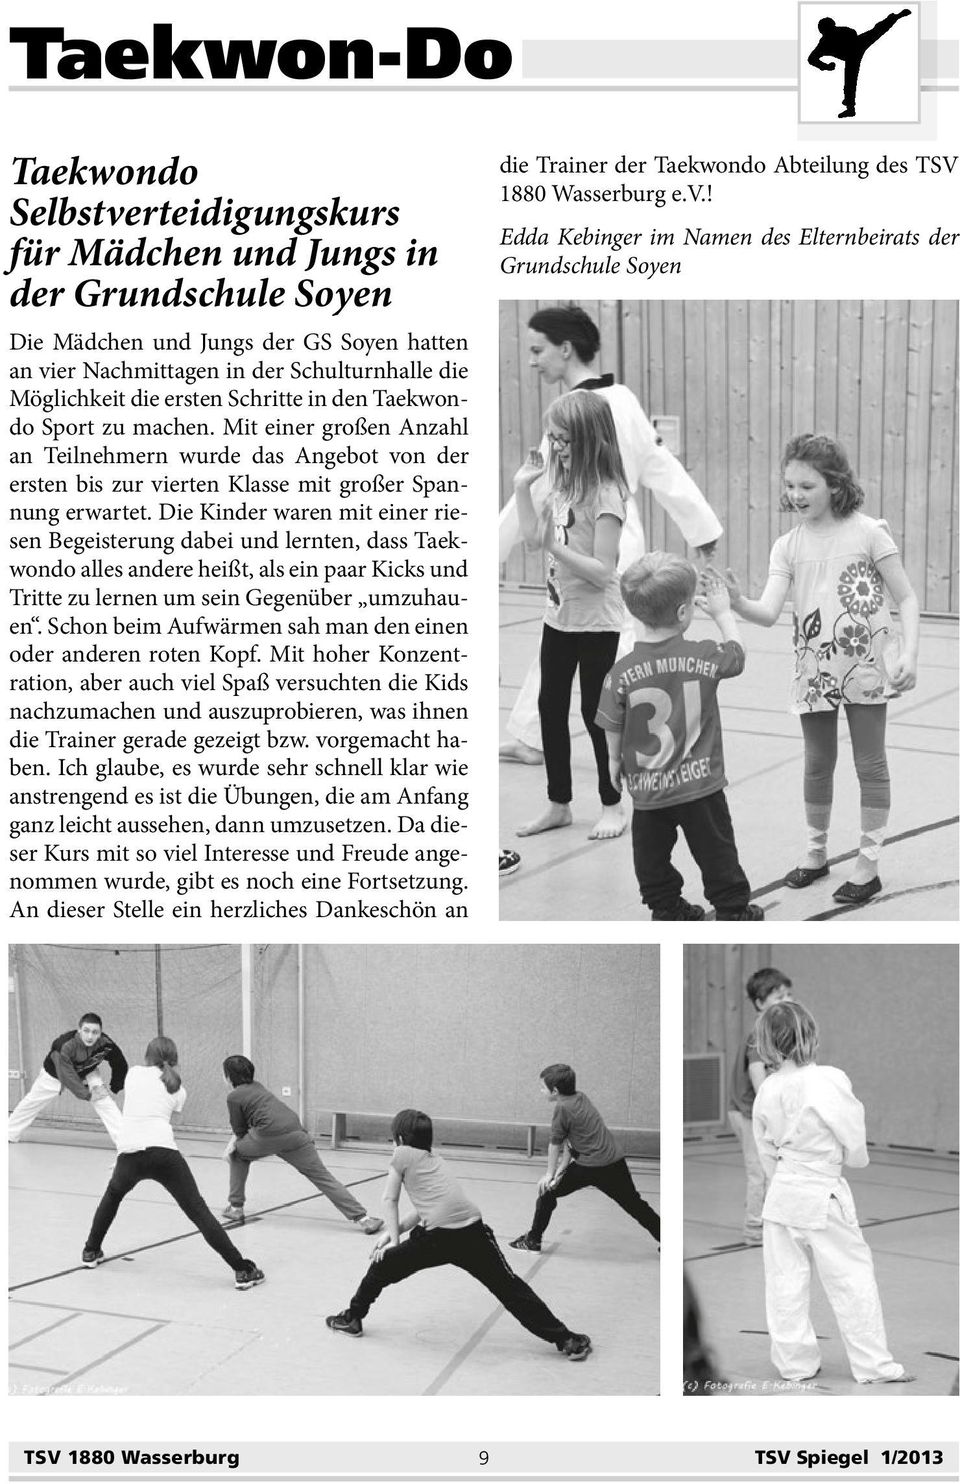 Die Kinder waren mit einer riesen Begeisterung dabei und lernten, dass Taekwondo alles andere heißt, als ein paar Kicks und Tritte zu lernen um sein Gegenüber umzuhauen.